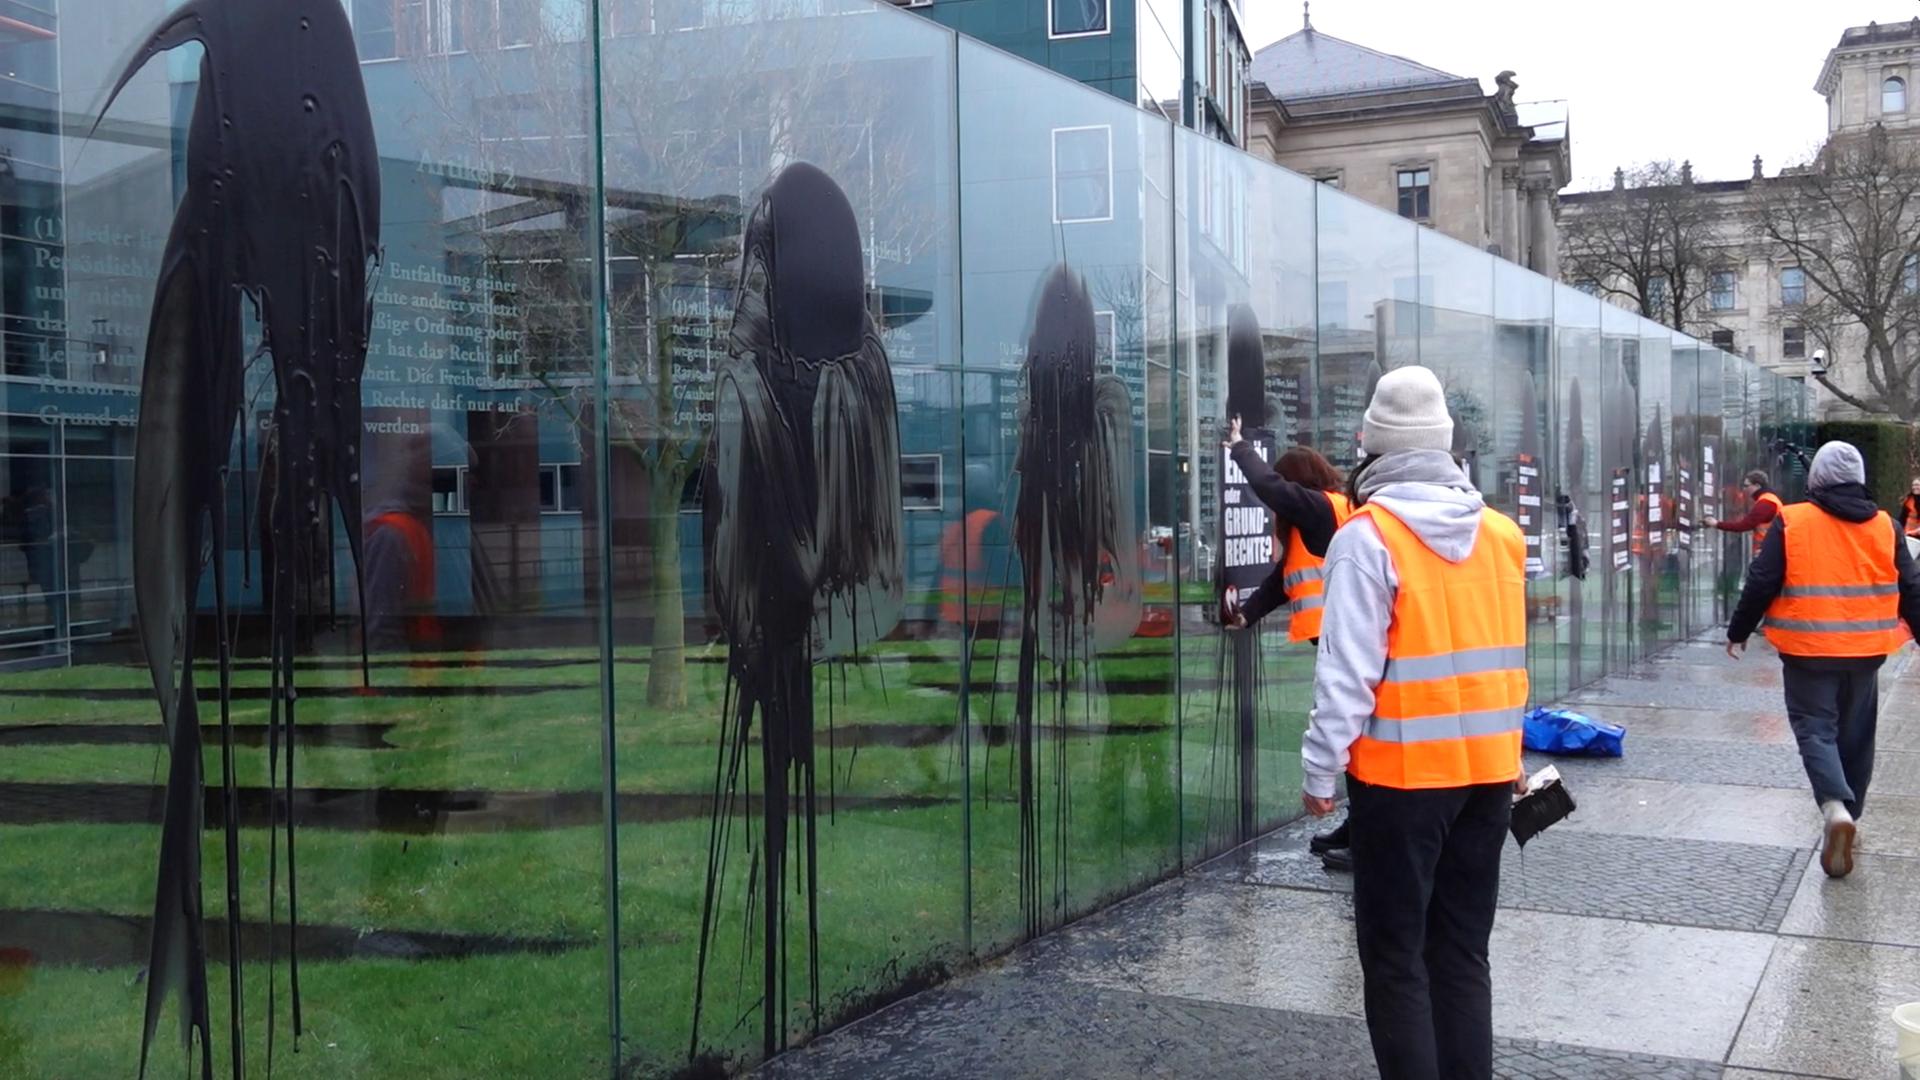 Klimaaktivisten der "Letzten Generation" kippen schwarze Farbe gegen die Glaswände und kleben Plakate an.